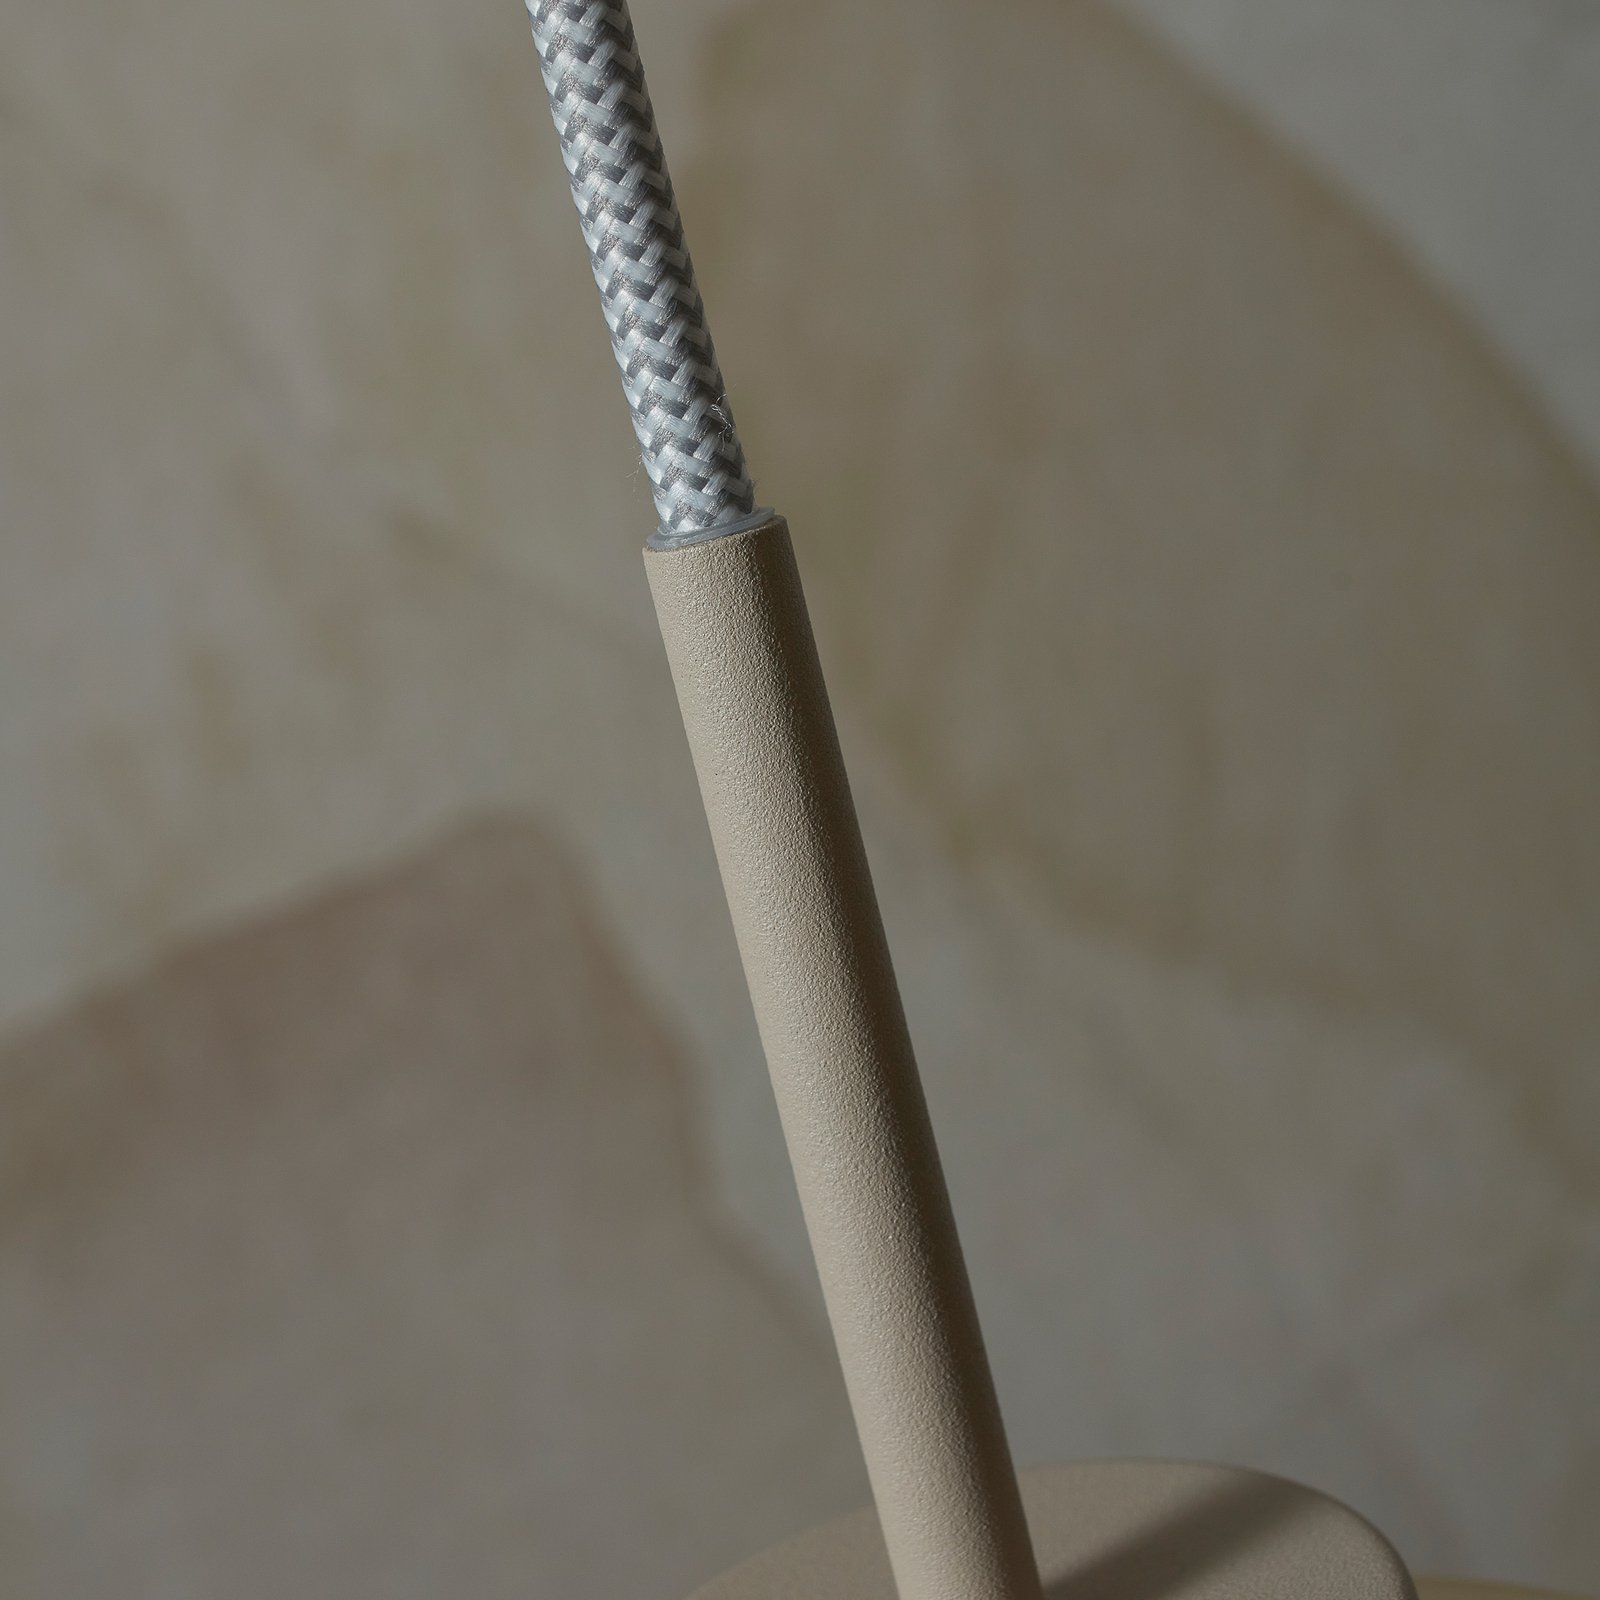 Het gaat om RoMi hanglamp Verona, barnsteen, Ø 15 cm